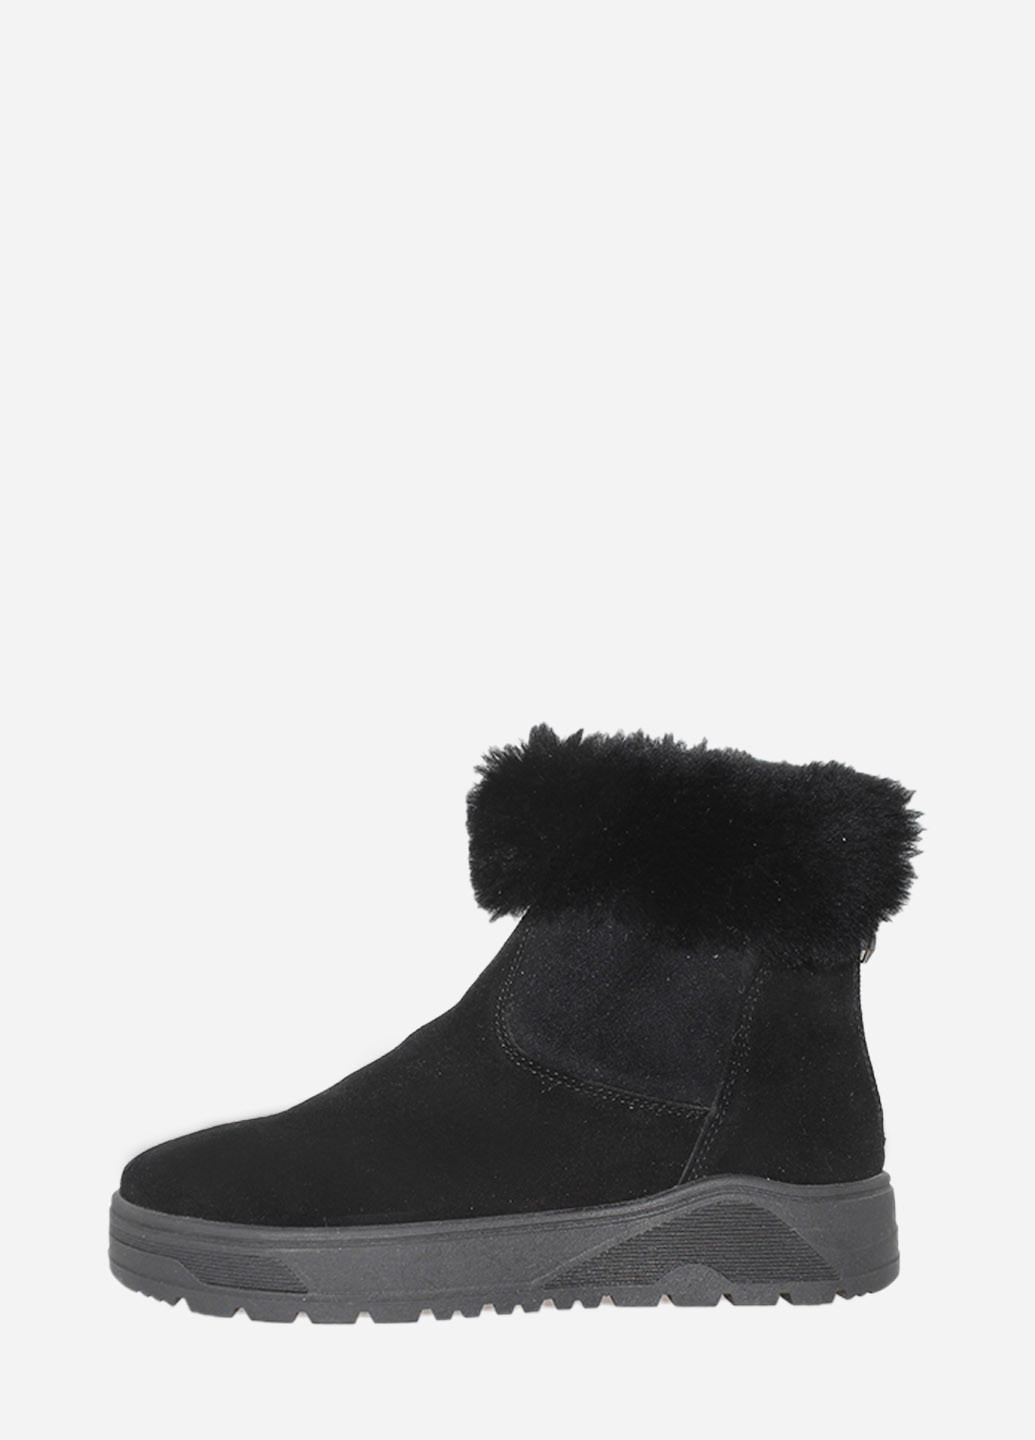 Зимние ботинки rm1592-11 черный Masis из натуральной замши